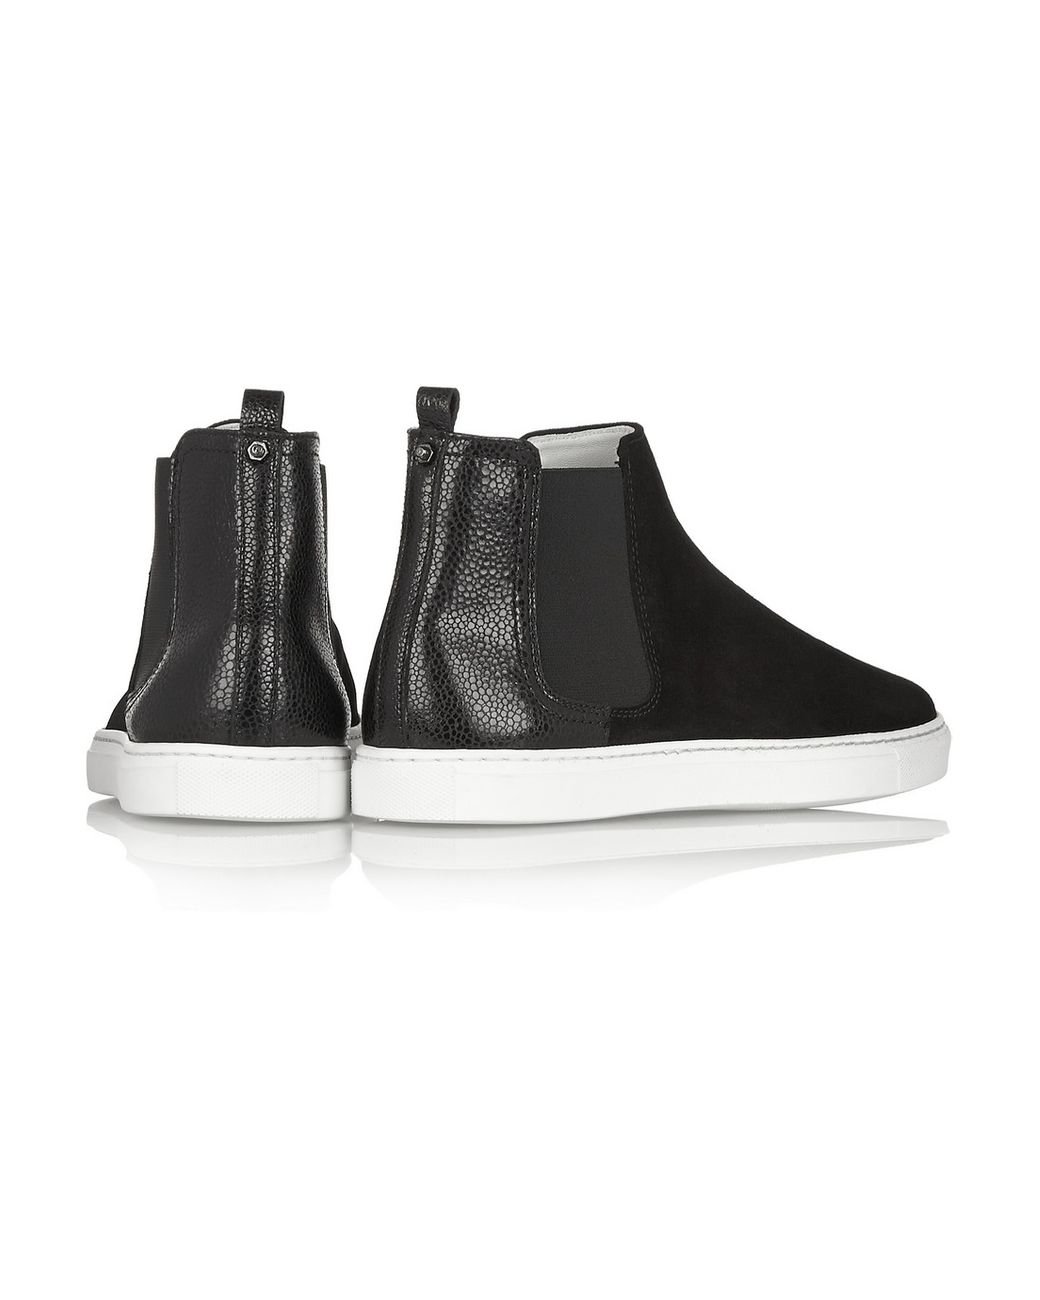 Lanvin Suede High-Top Slip-On Sneakers in Black | Lyst